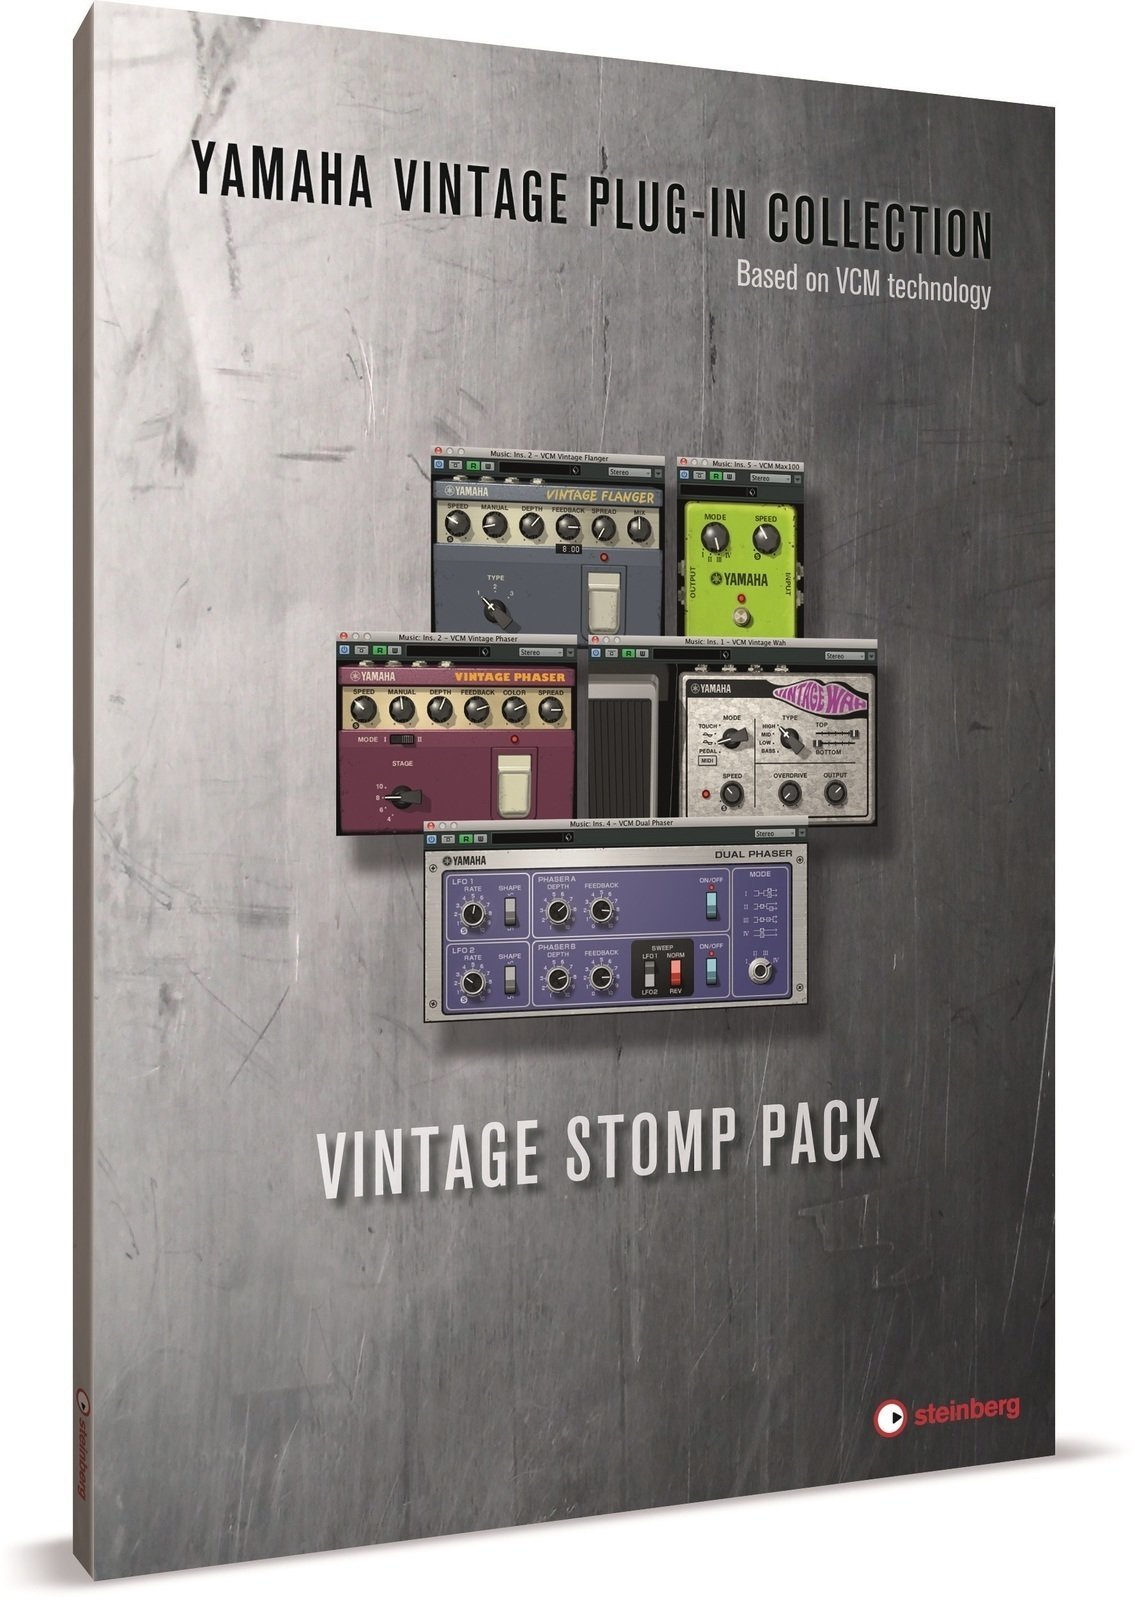 Studio Software Steinberg Vintage Stomp Pack